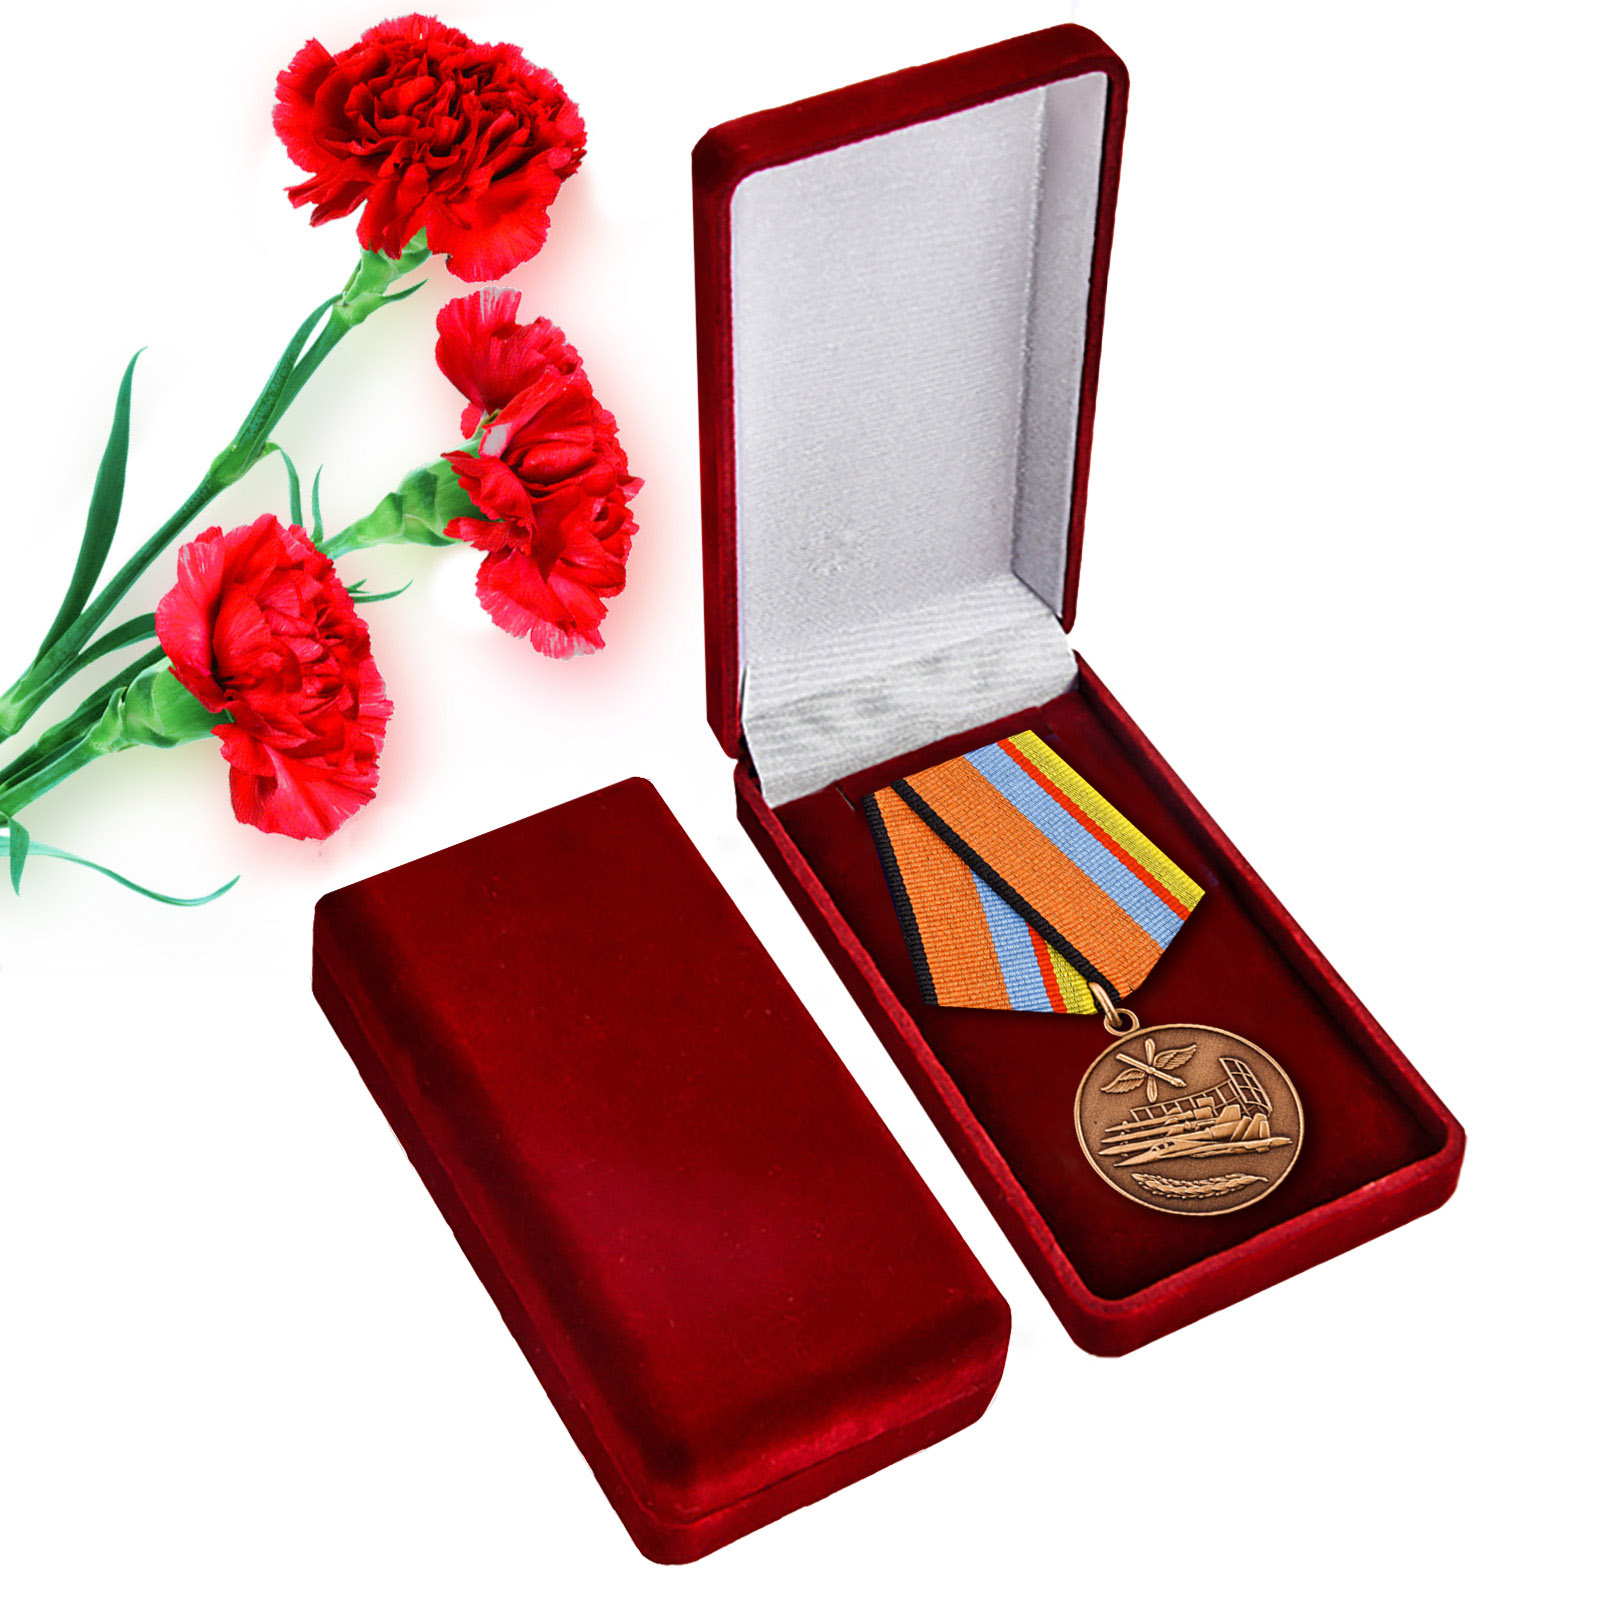 Медаль "За службу в ВВС"  МО РФ